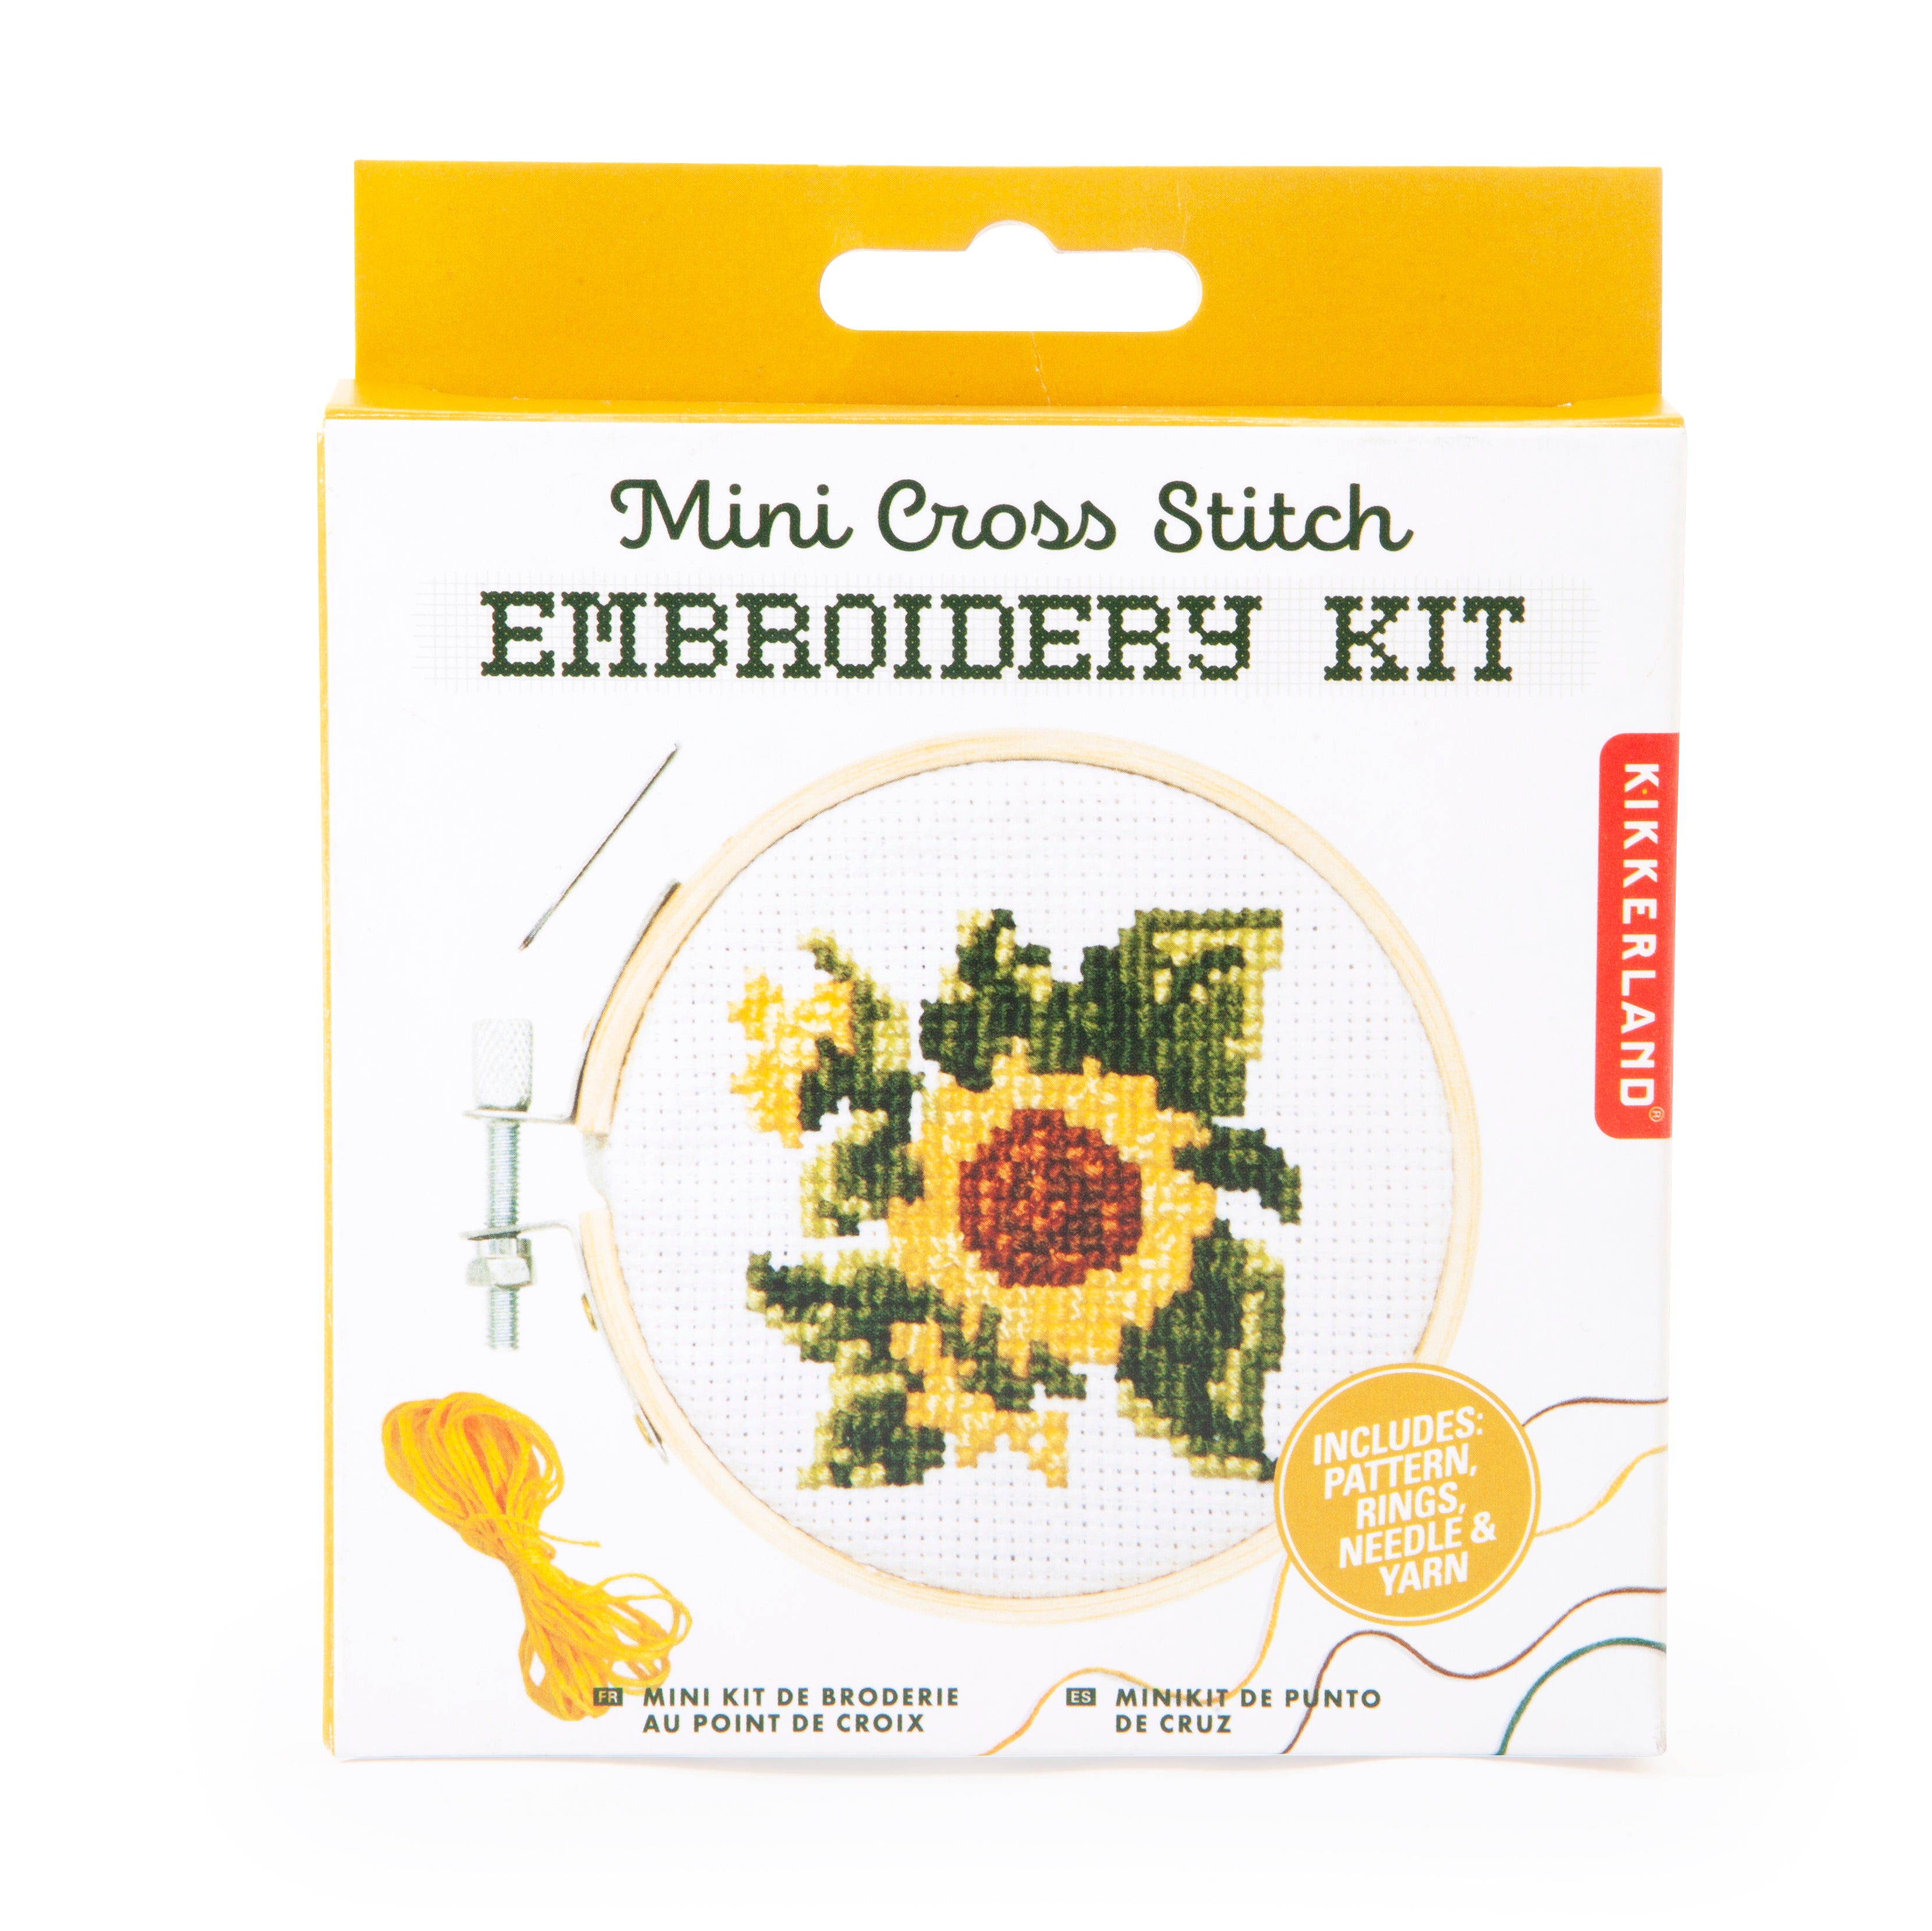 Mini Cross Stitch Embroidery Kit - Sunflower Kikkerland - Oscar & Libby's